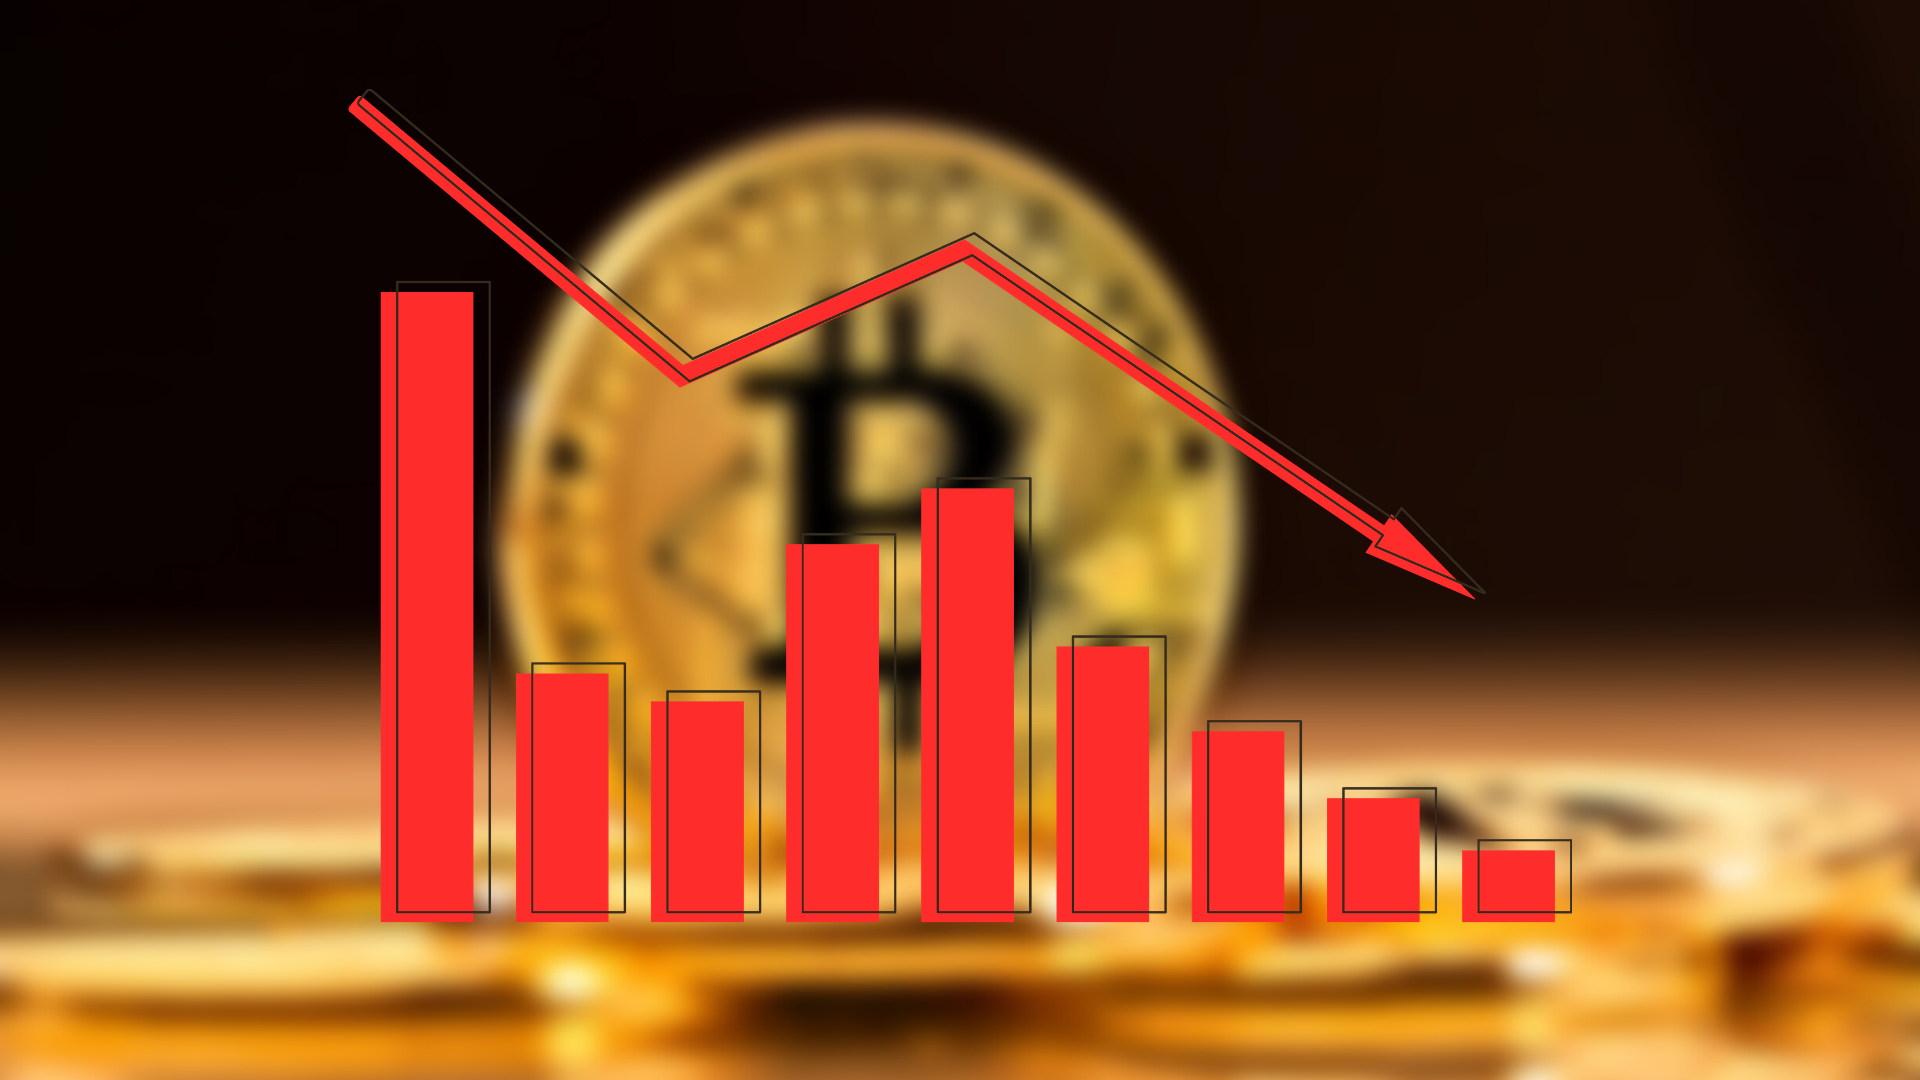 Bitcoin rekor seviyeden sonra düşüşe geçti. | Bitcoin 9.000 $ düştü